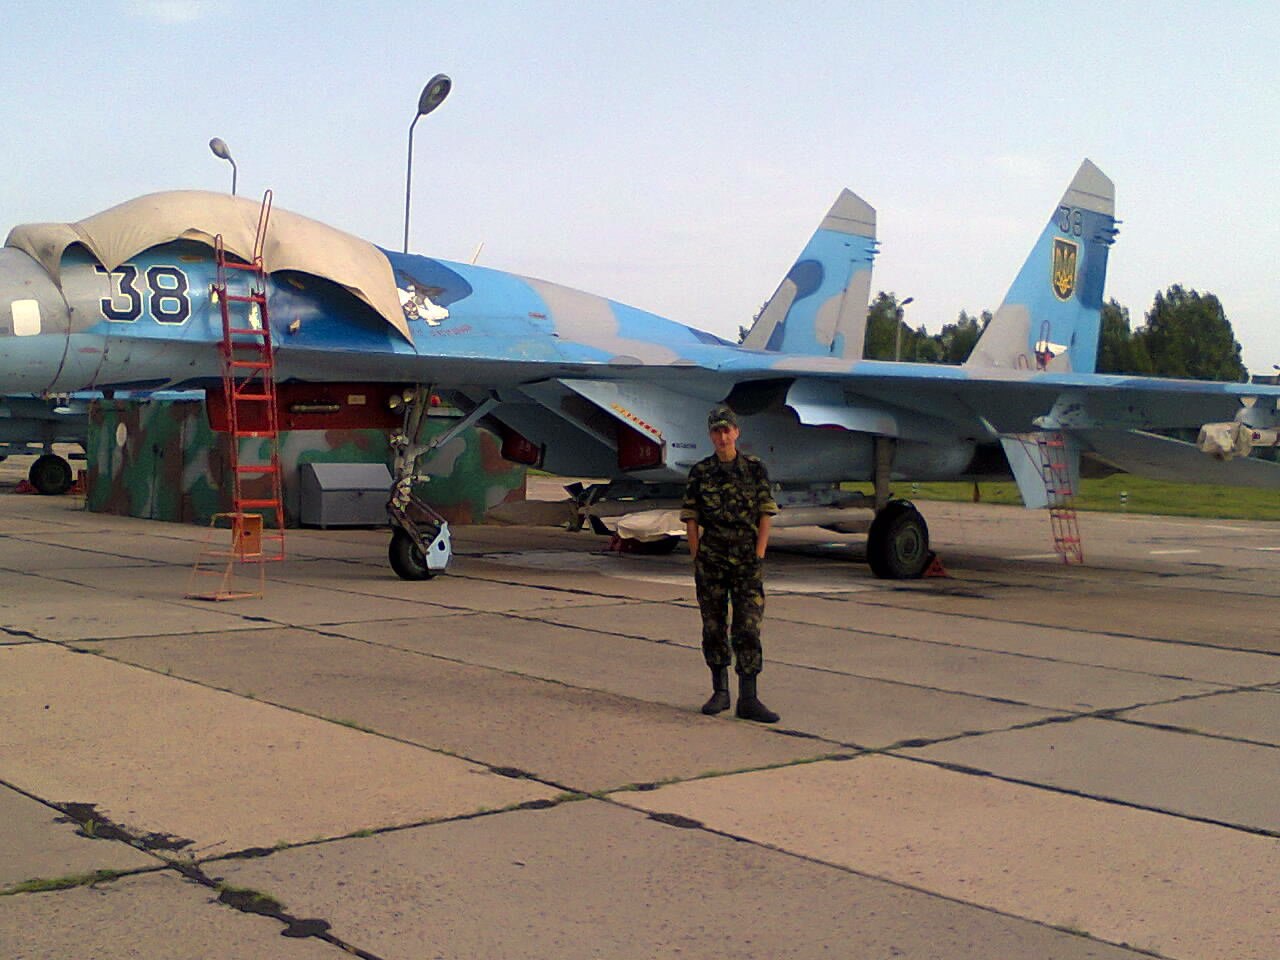 Лишь около 30 машин отошло Беларуси и 74 самолета (включая 2 прототипа Су-33) достались независимой Украины